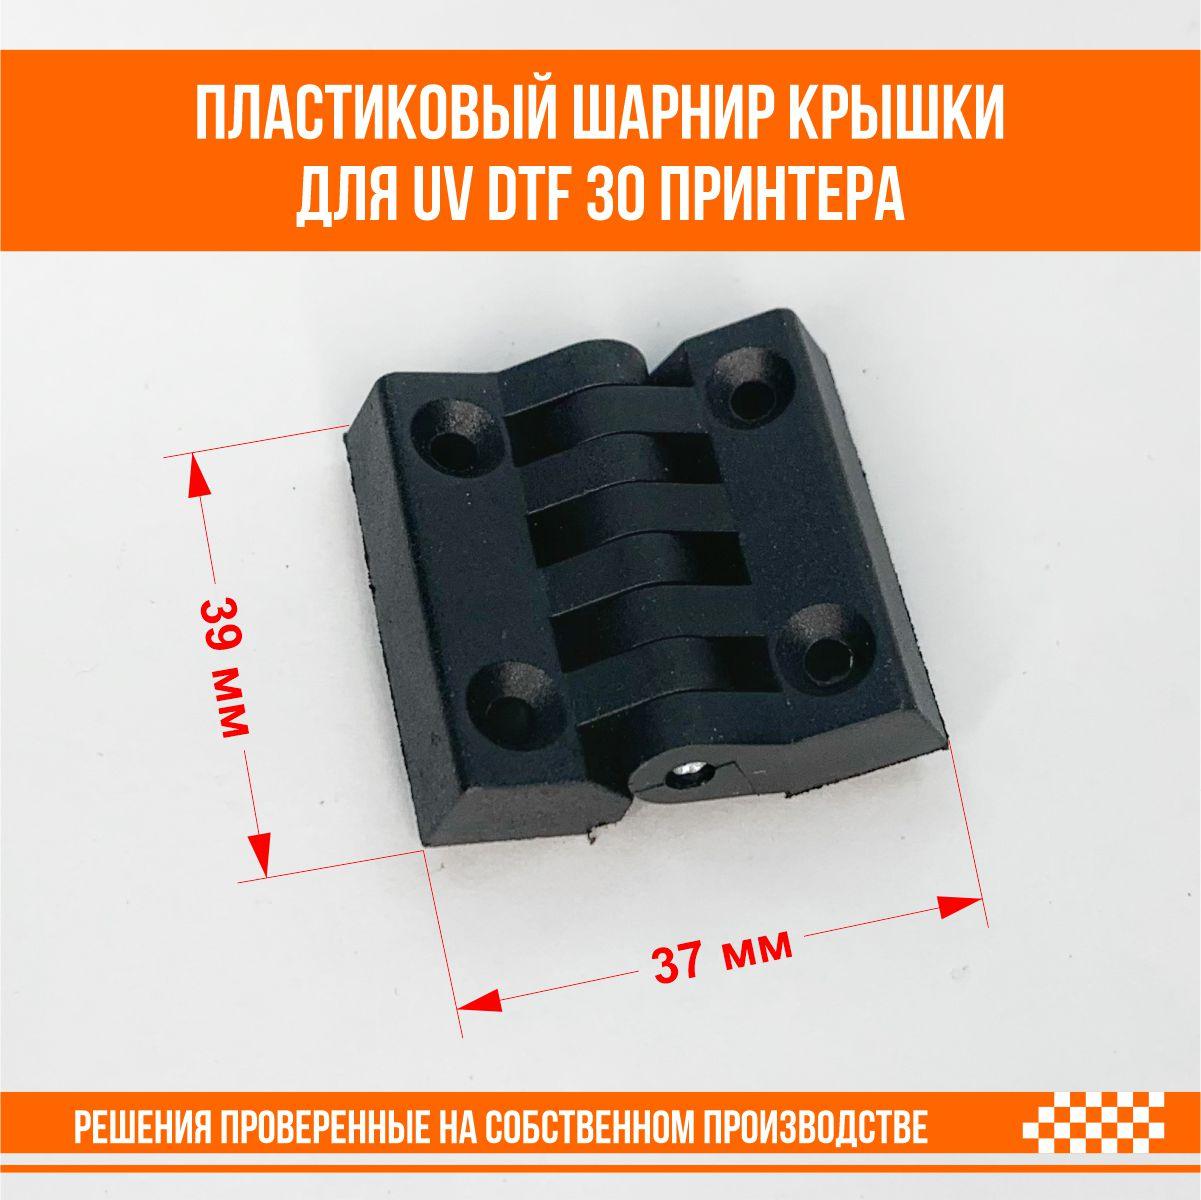 Пластиковый шарнир фронтальной крышки для UV DTF 30 принтера